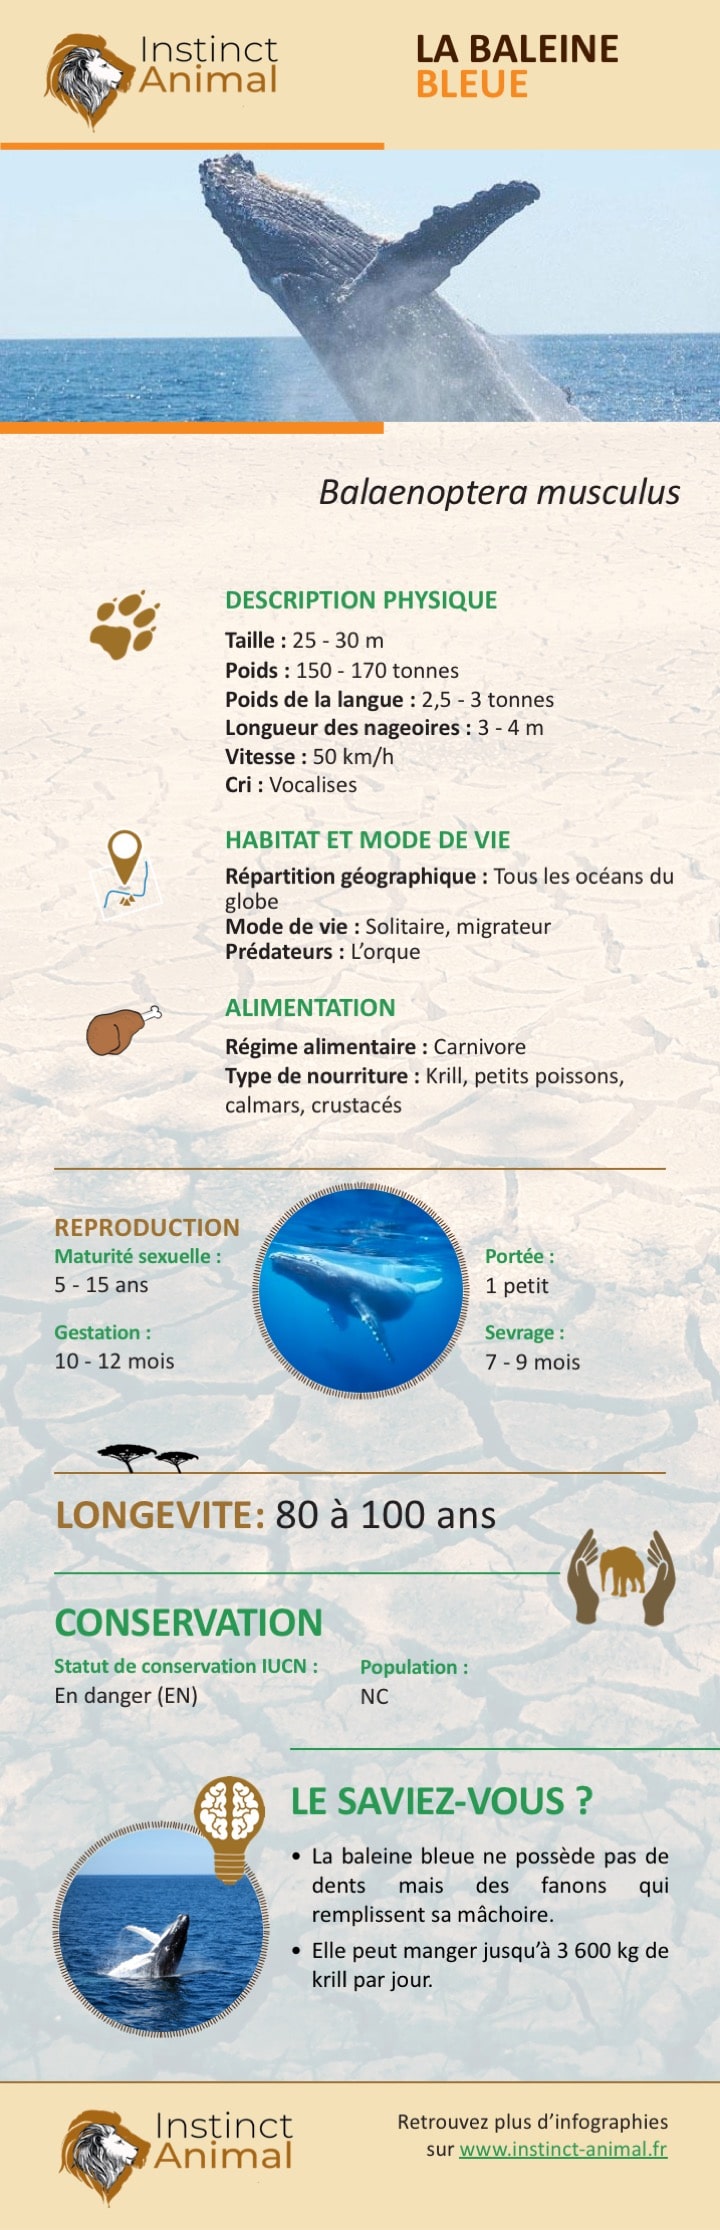 Description de la baleine bleue - Infographie - Instinct Animal